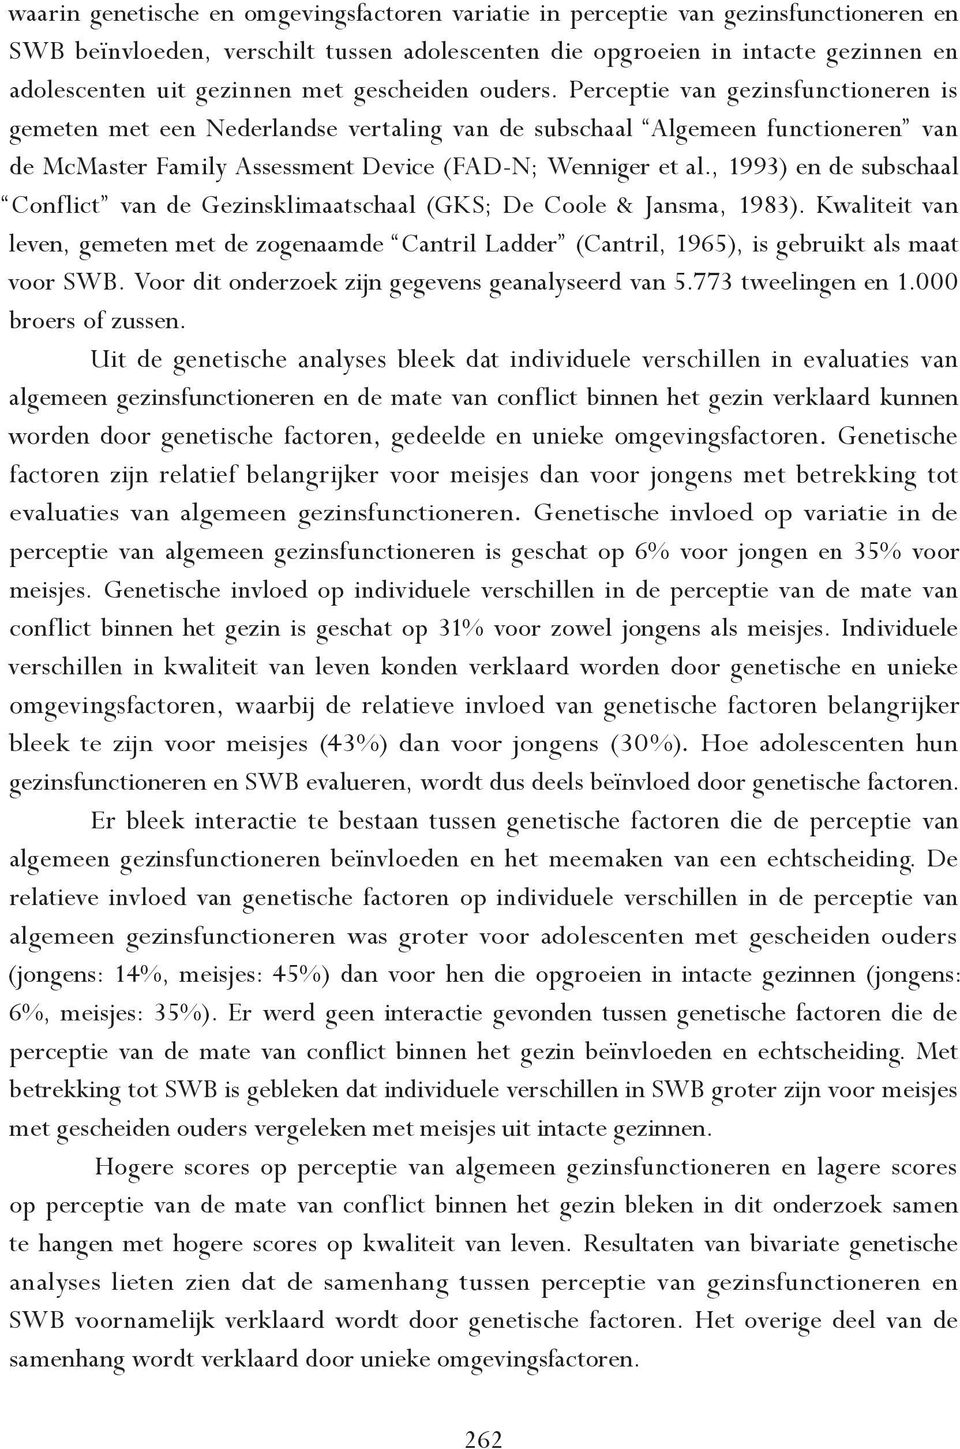 , 1993) en de subschaal Conflict van de Gezinsklimaatschaal (GKS; De Coole & Jansma, 1983).